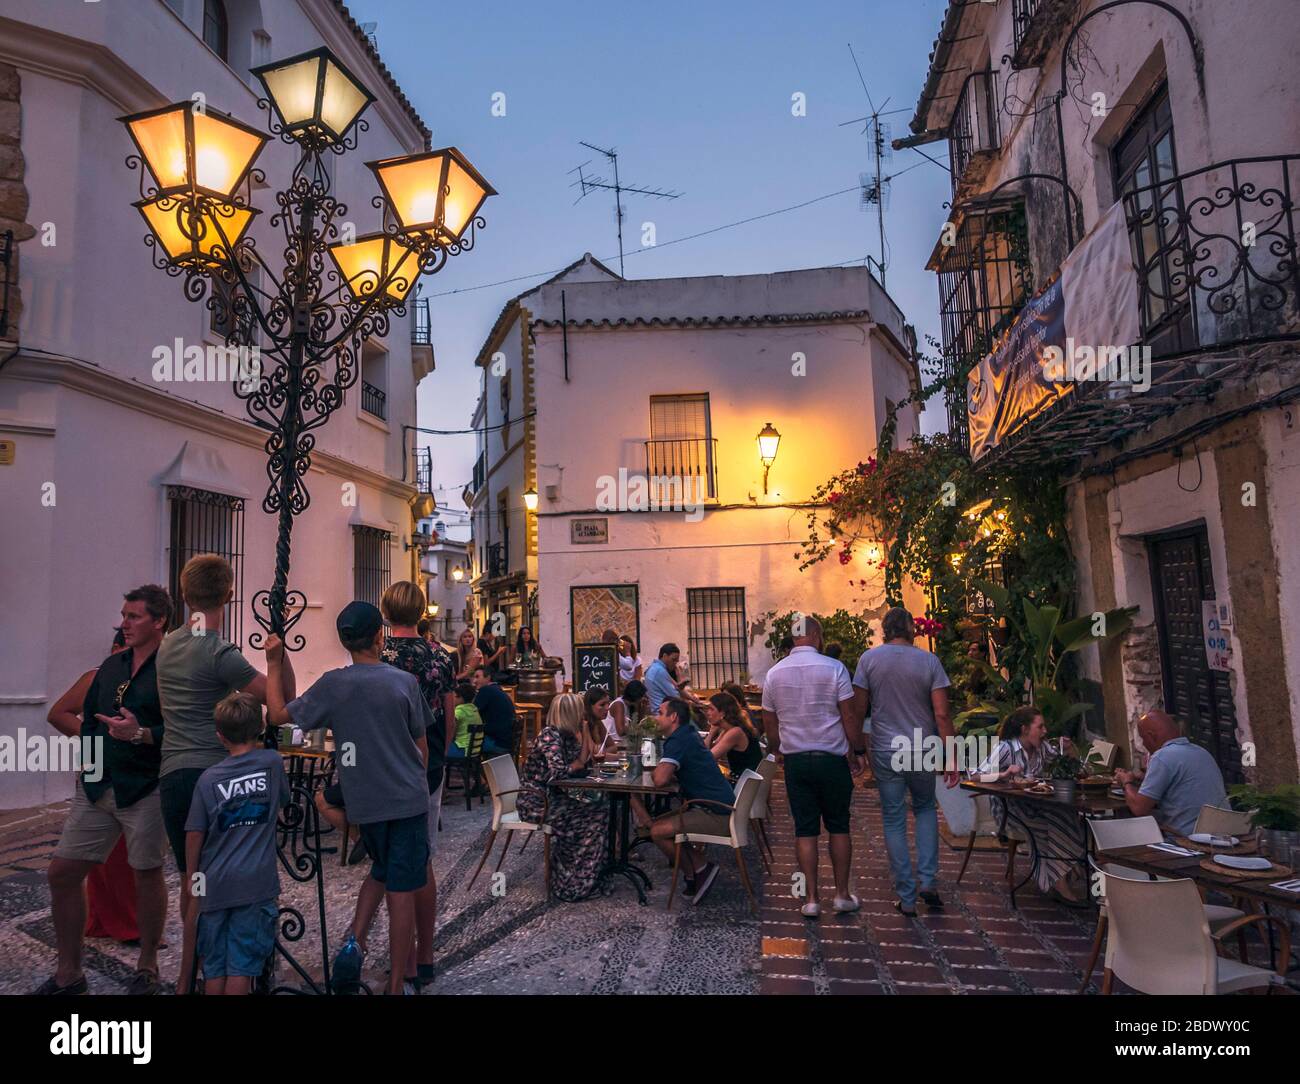 Une rue étroite et animée dans la vieille ville de Marbella, Marbella, Espagne. Banque D'Images